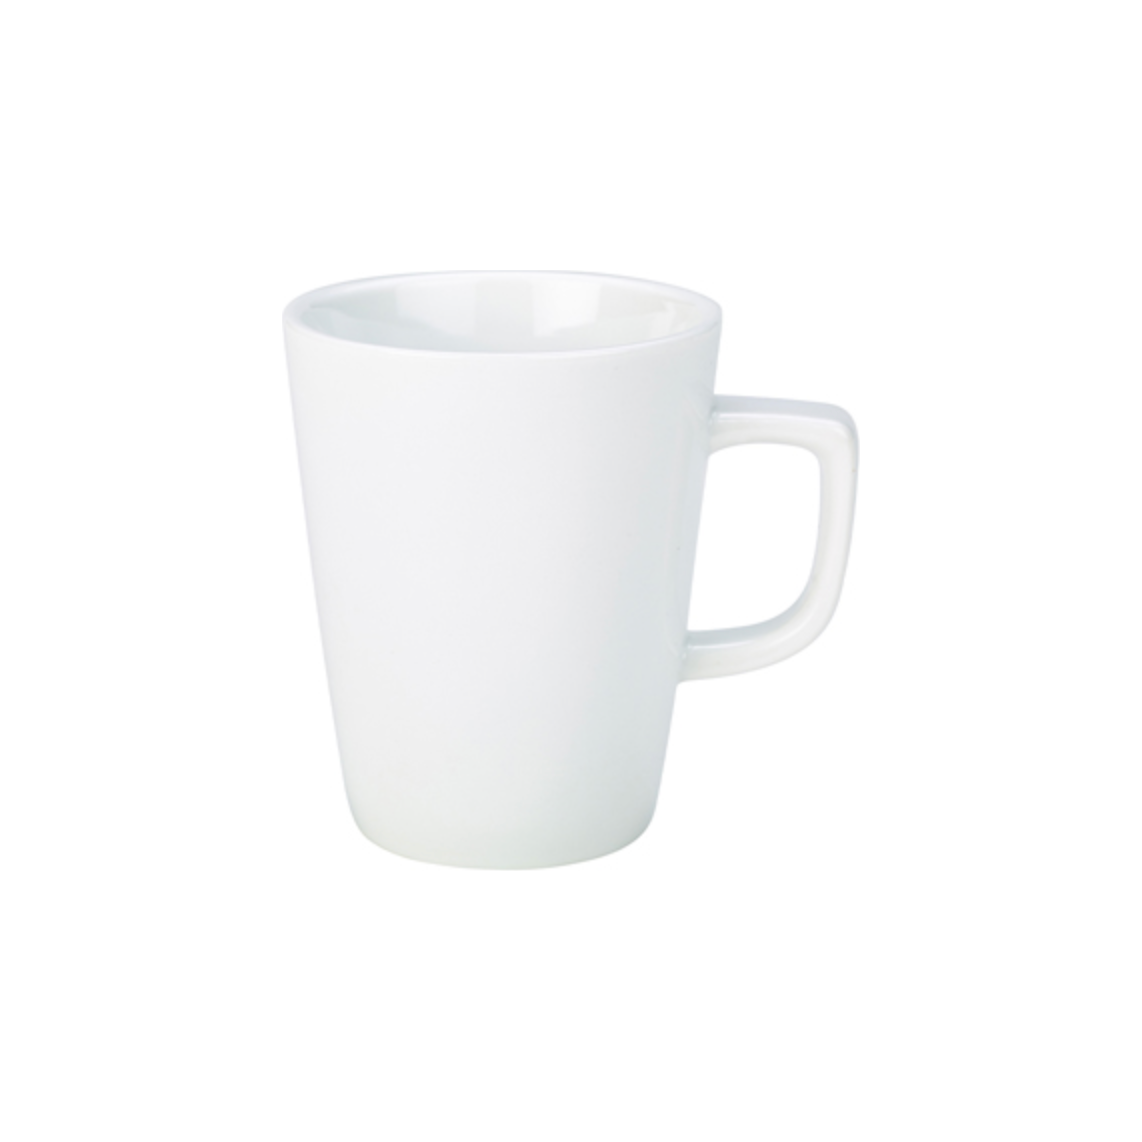 Genware Porcelain White Latte Mug 40cl Case Size 6